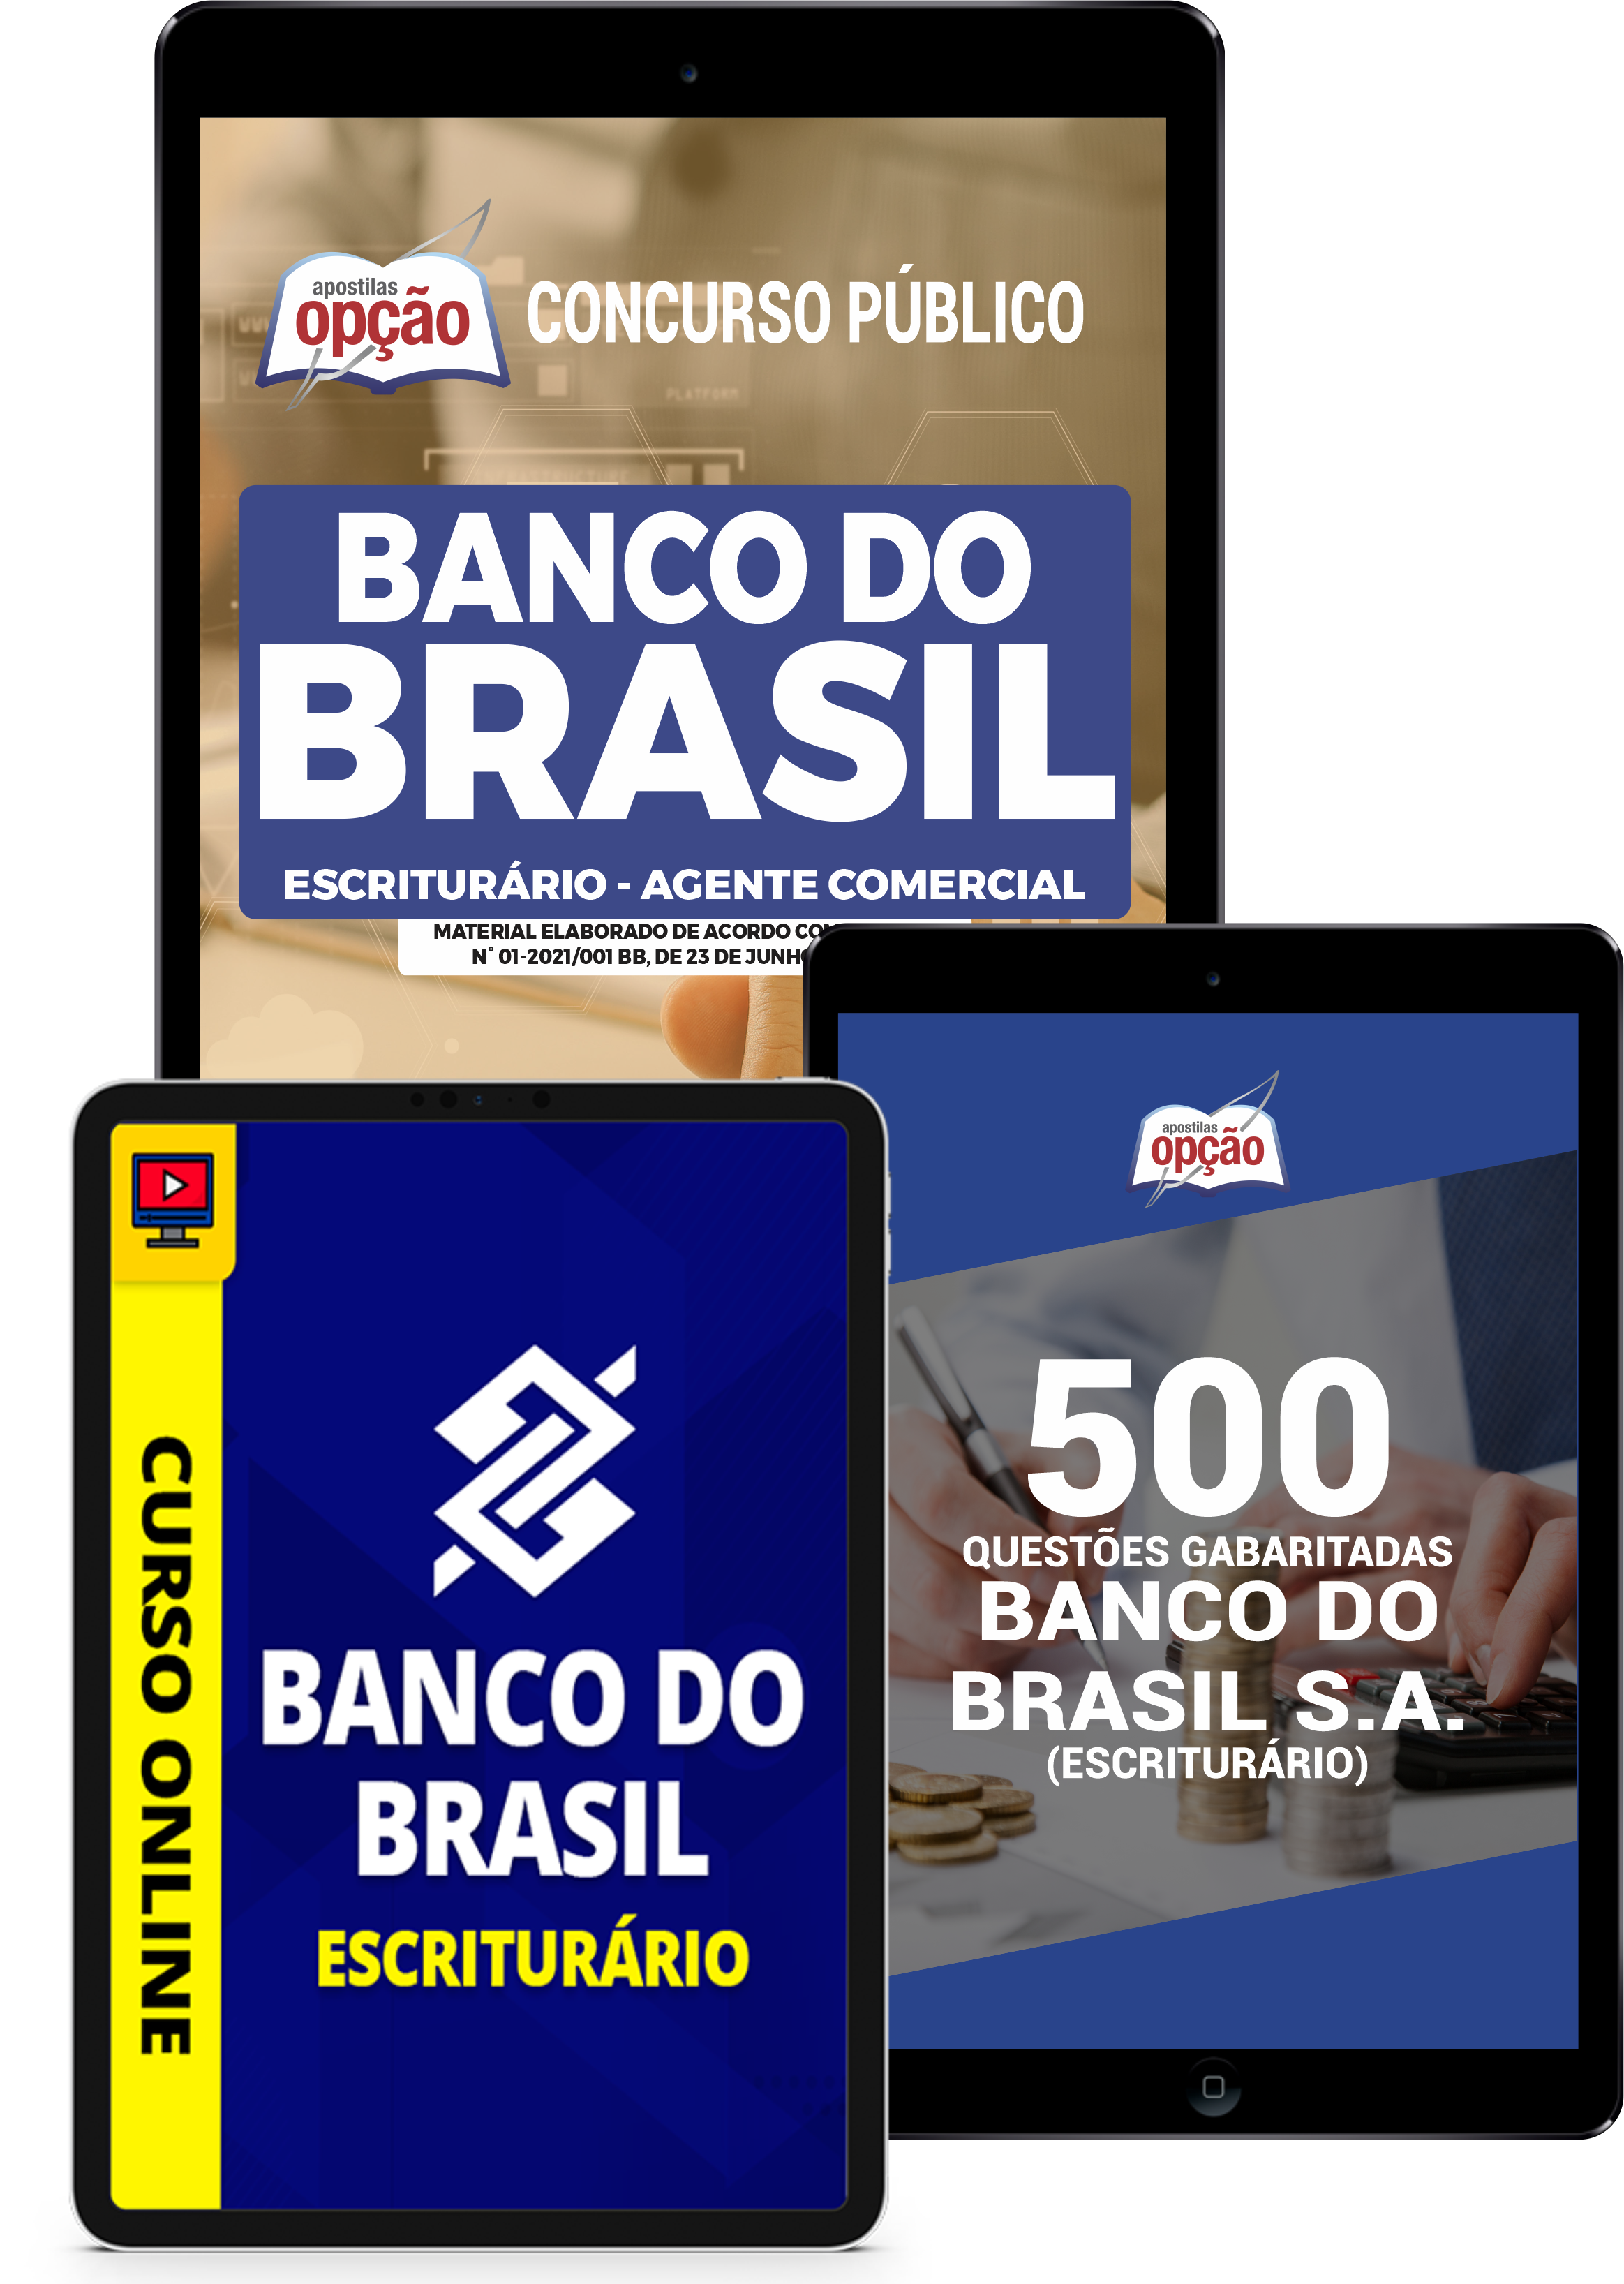 Combo Banco do Brasil Escriturário - Agente Comercial